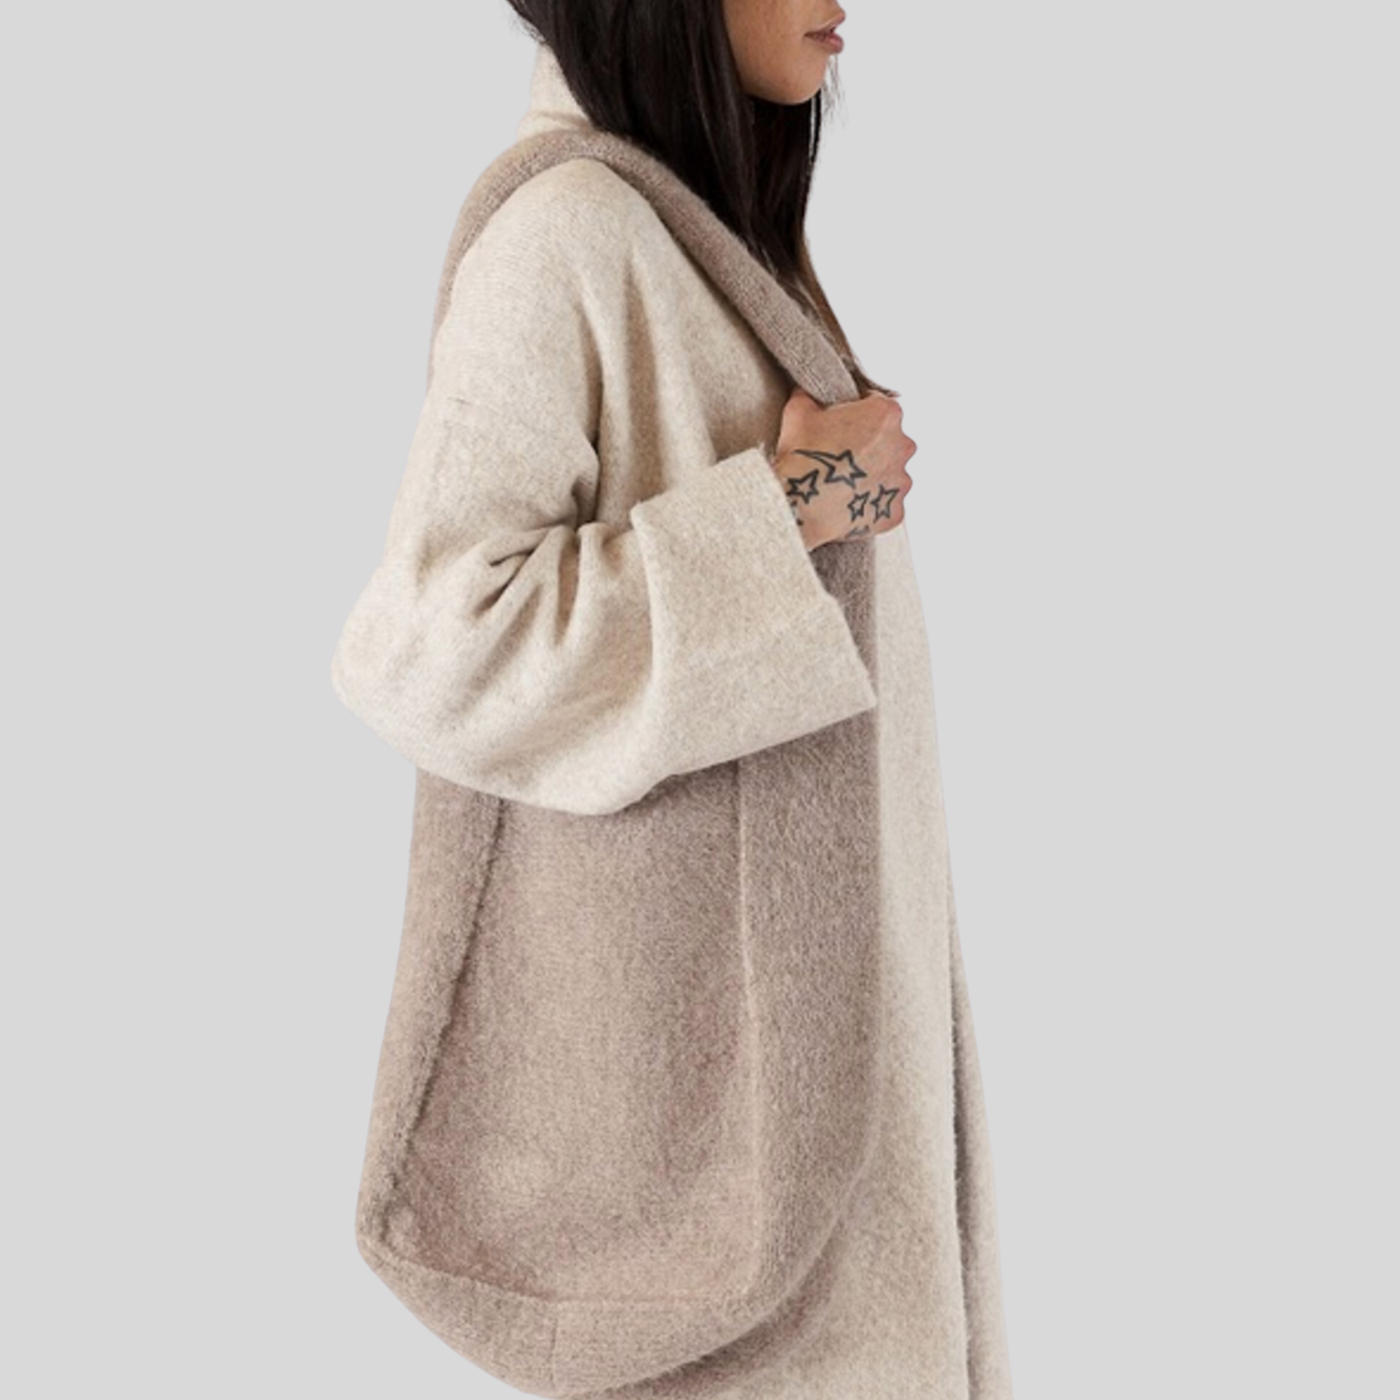 Gotstyle Fashion - Lyla & Luxe Bags Knit Tote Bag - Tan